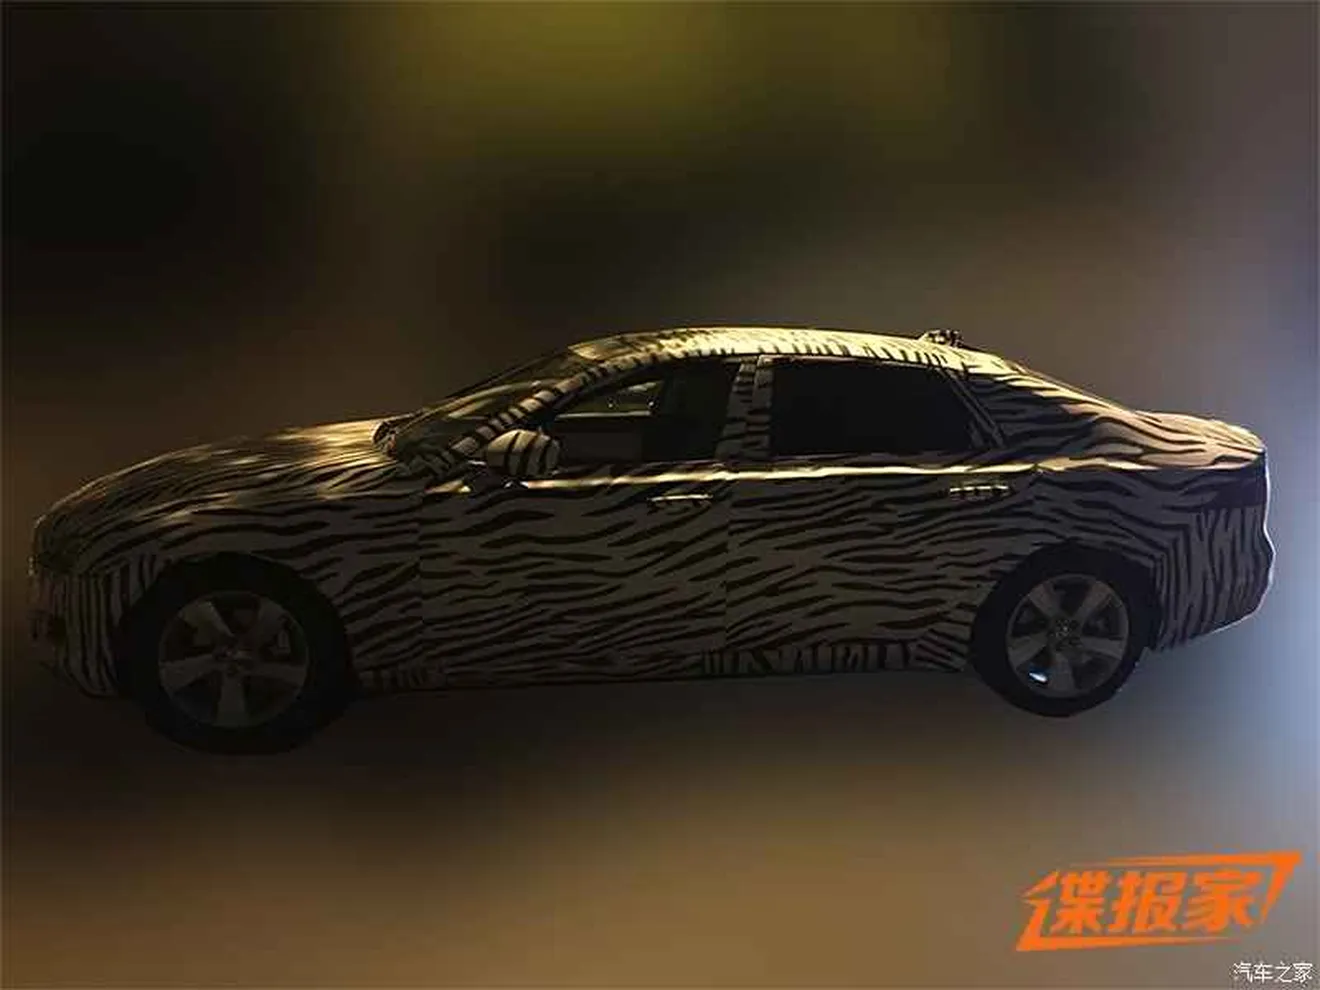 Jaguar XF L 2017, el XF largo se prepara para su debut en China